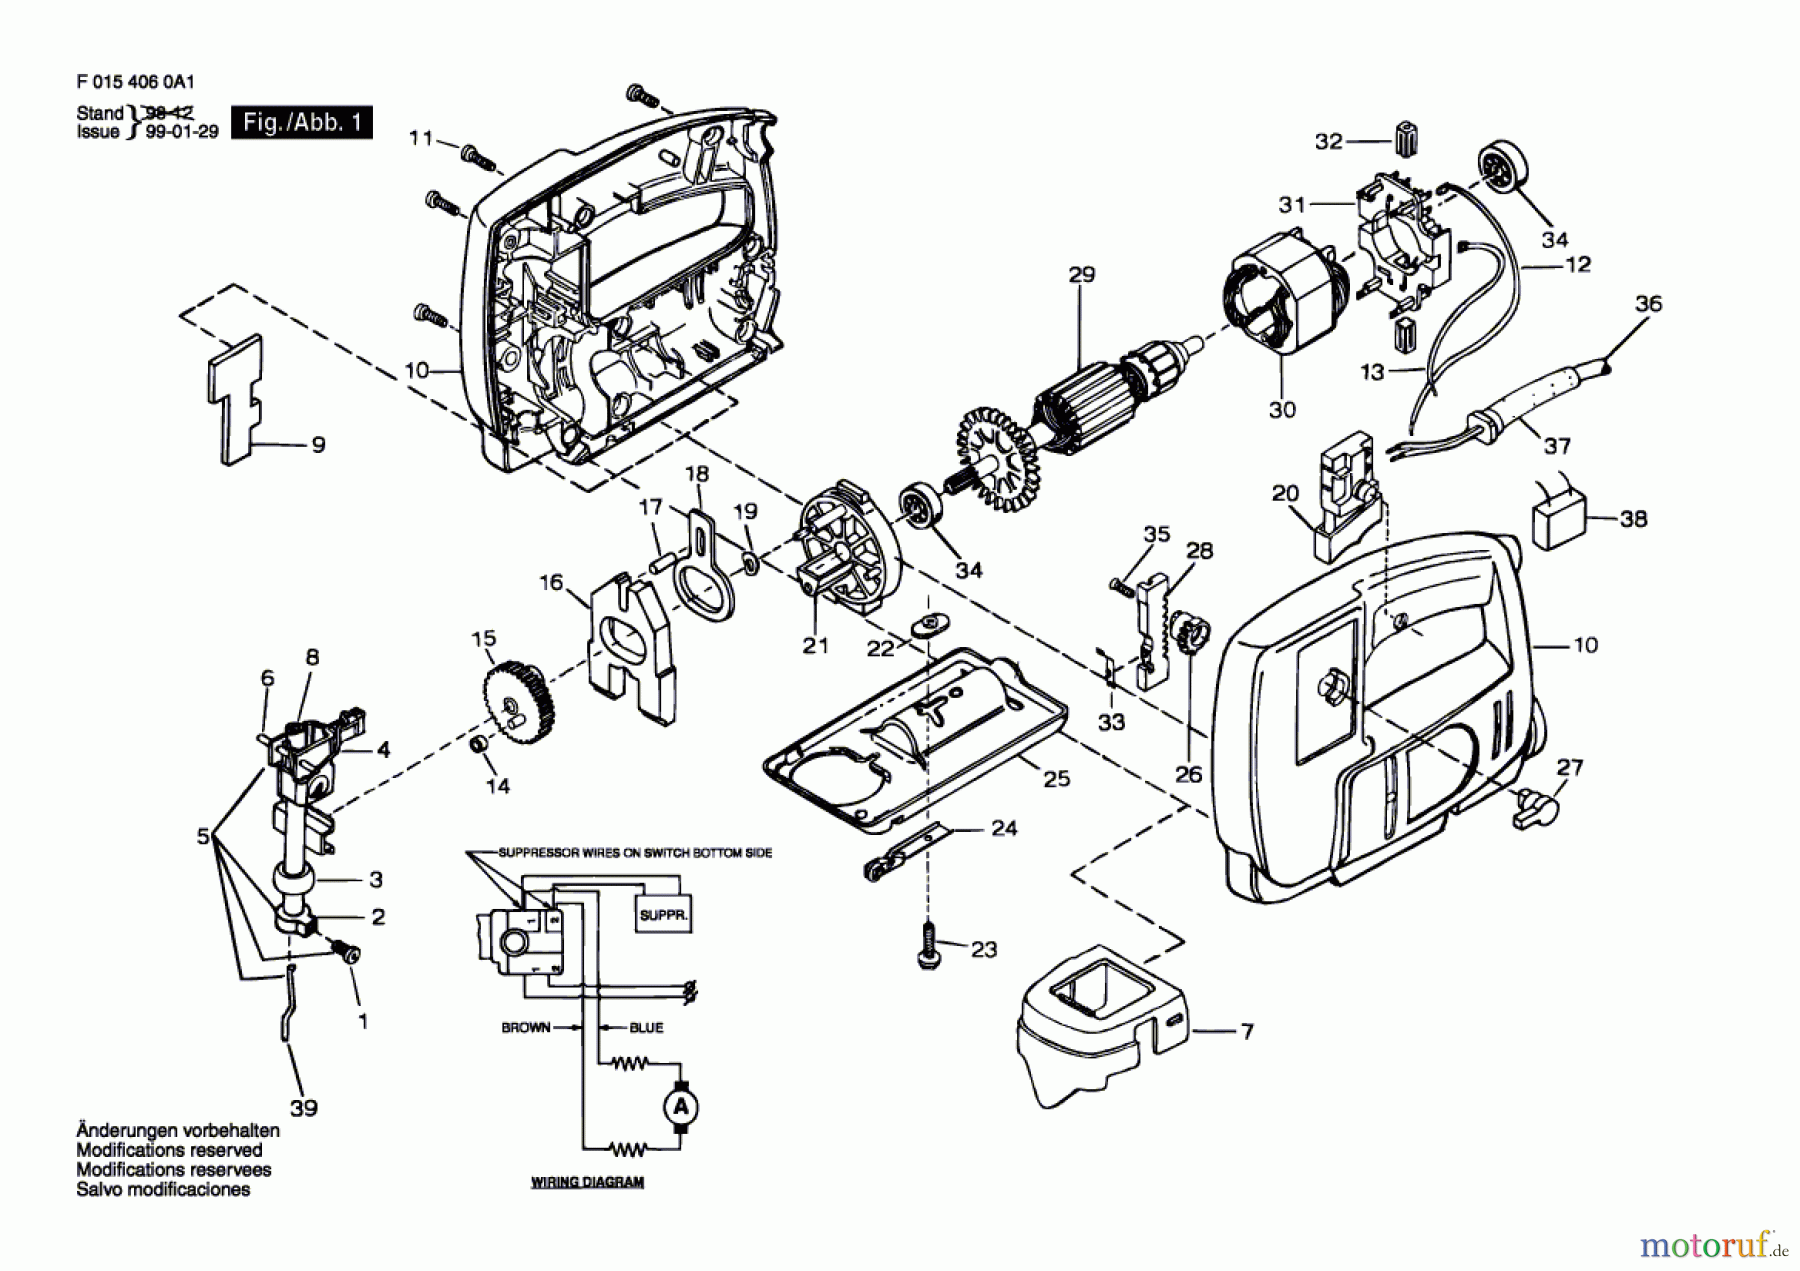  Bosch Werkzeug Stichsäge 4060 H1 Seite 1